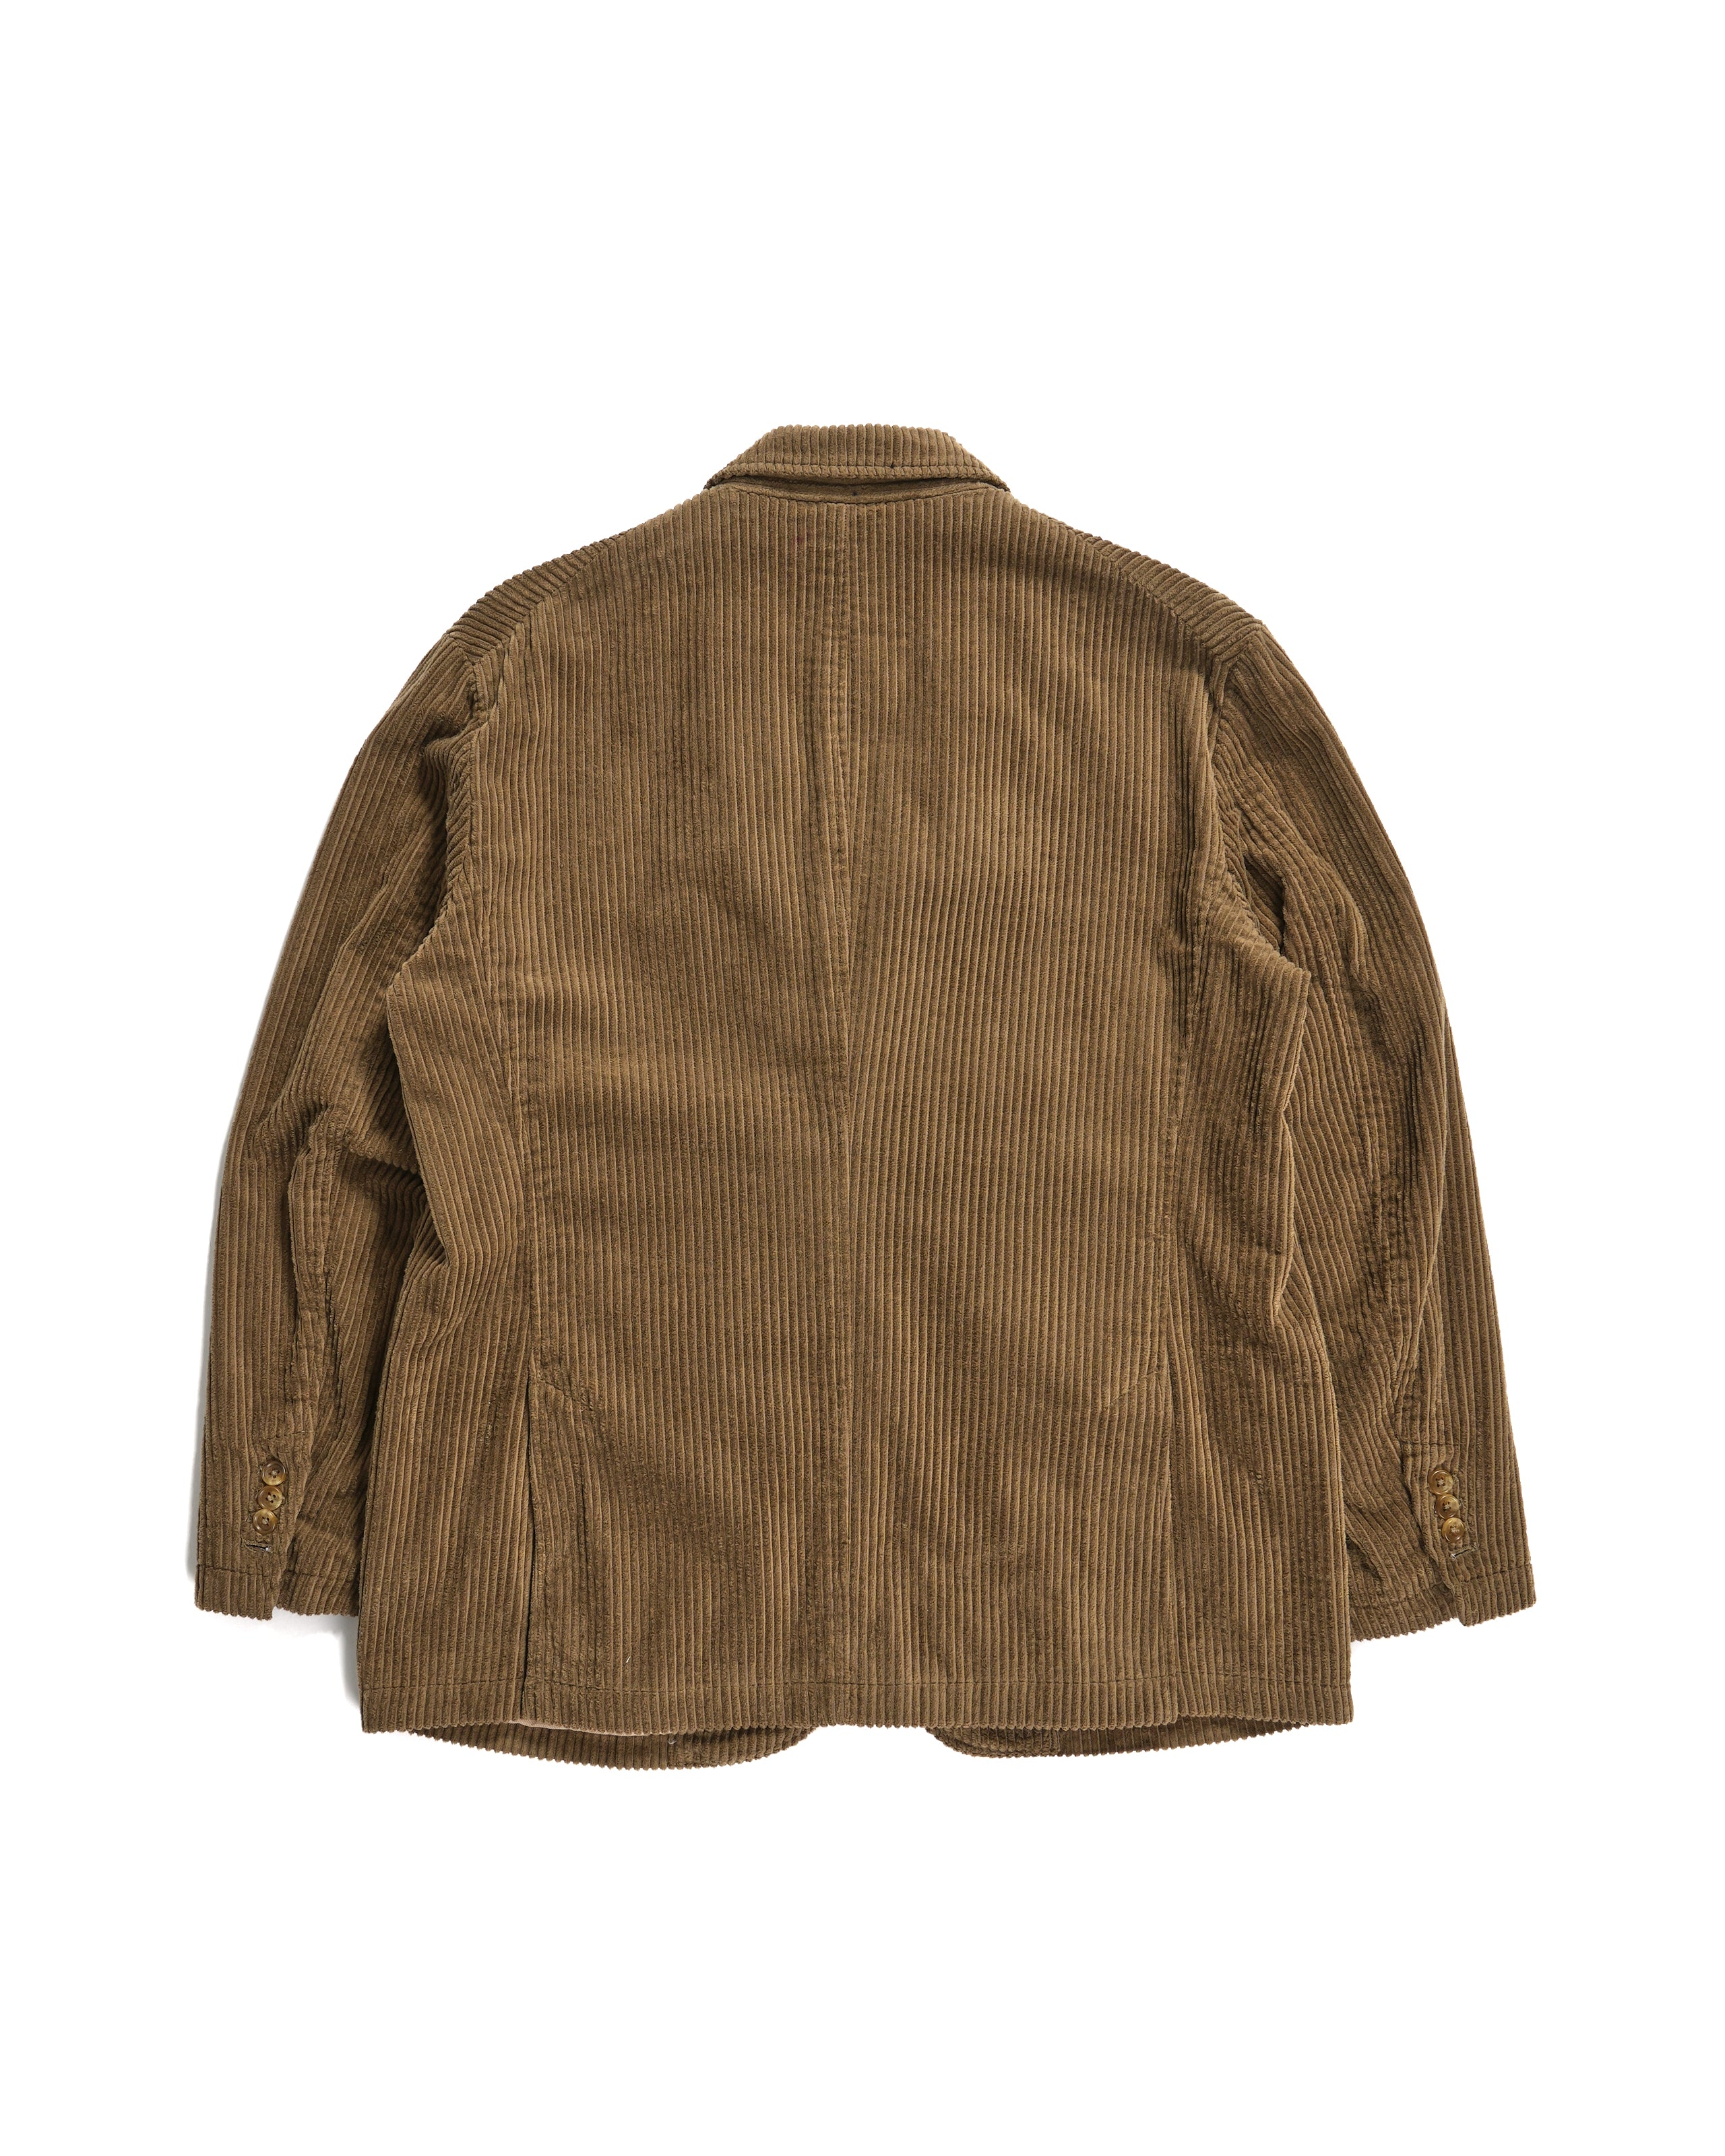 Andover Jacket - Khaki Cotton 4.5W Corduroy